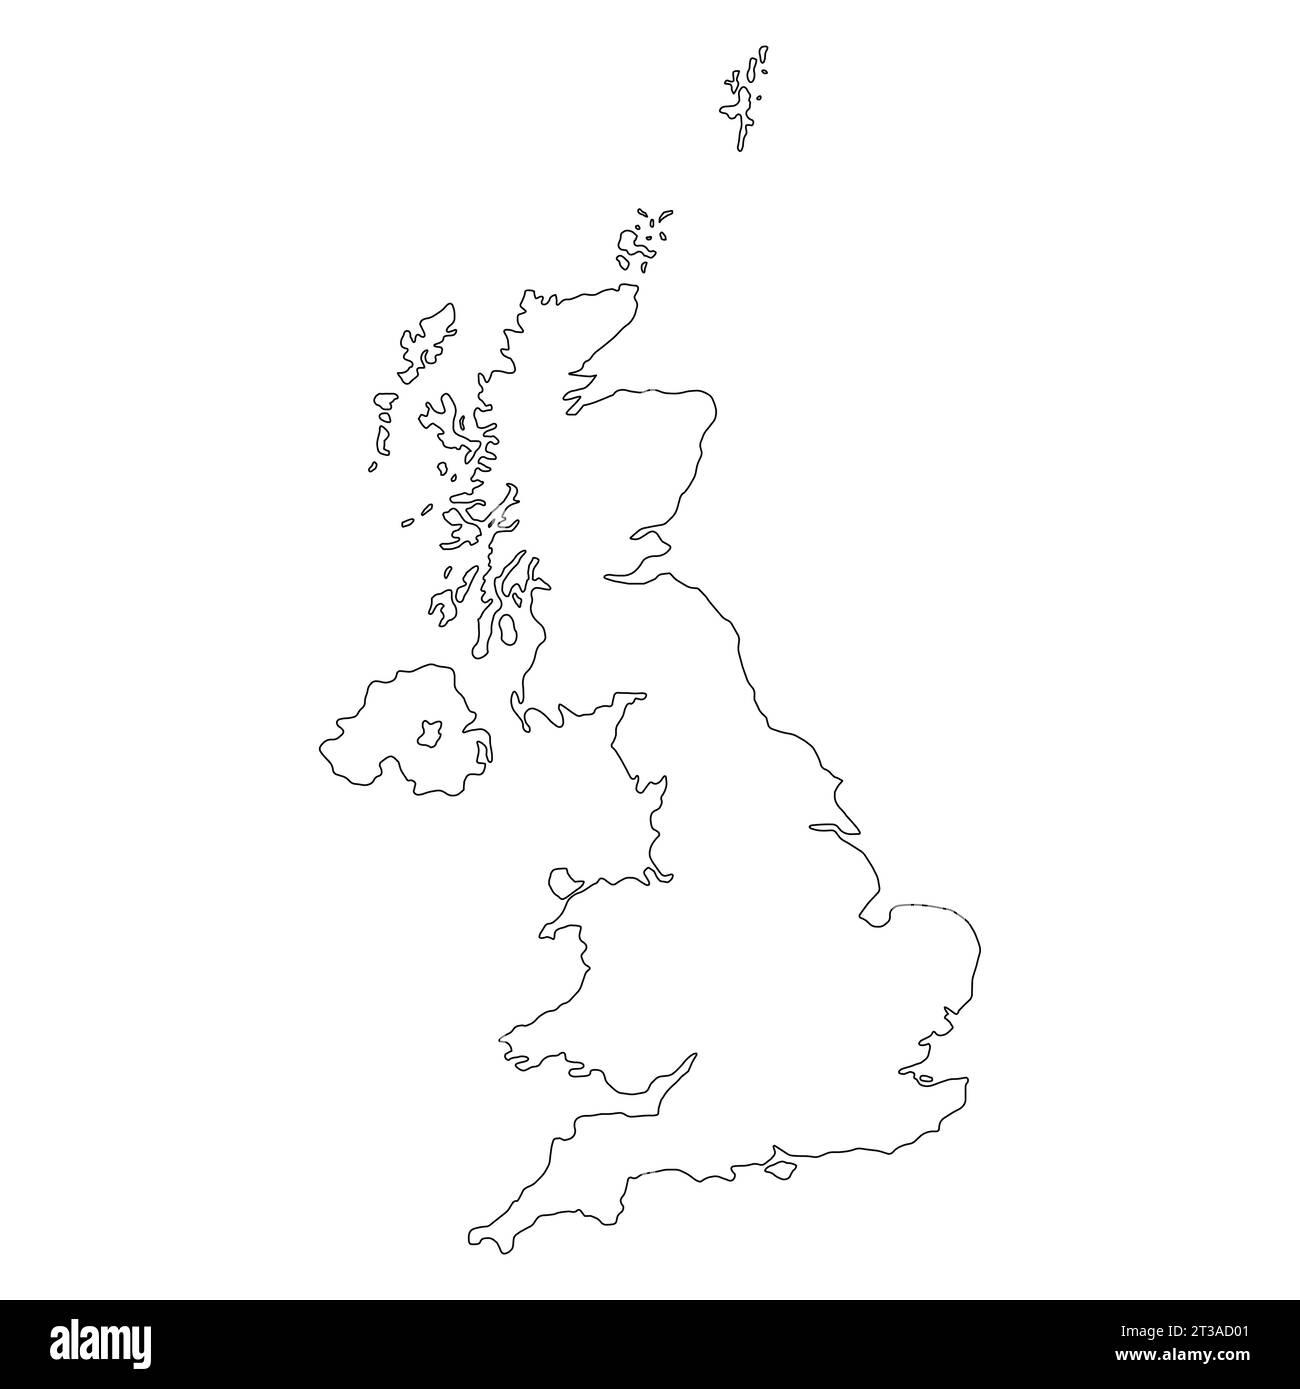 Karte des Vereinigten Königreichs Großbritannien und Nordirland, detaillierte Vektorillustration. Stock Vektor